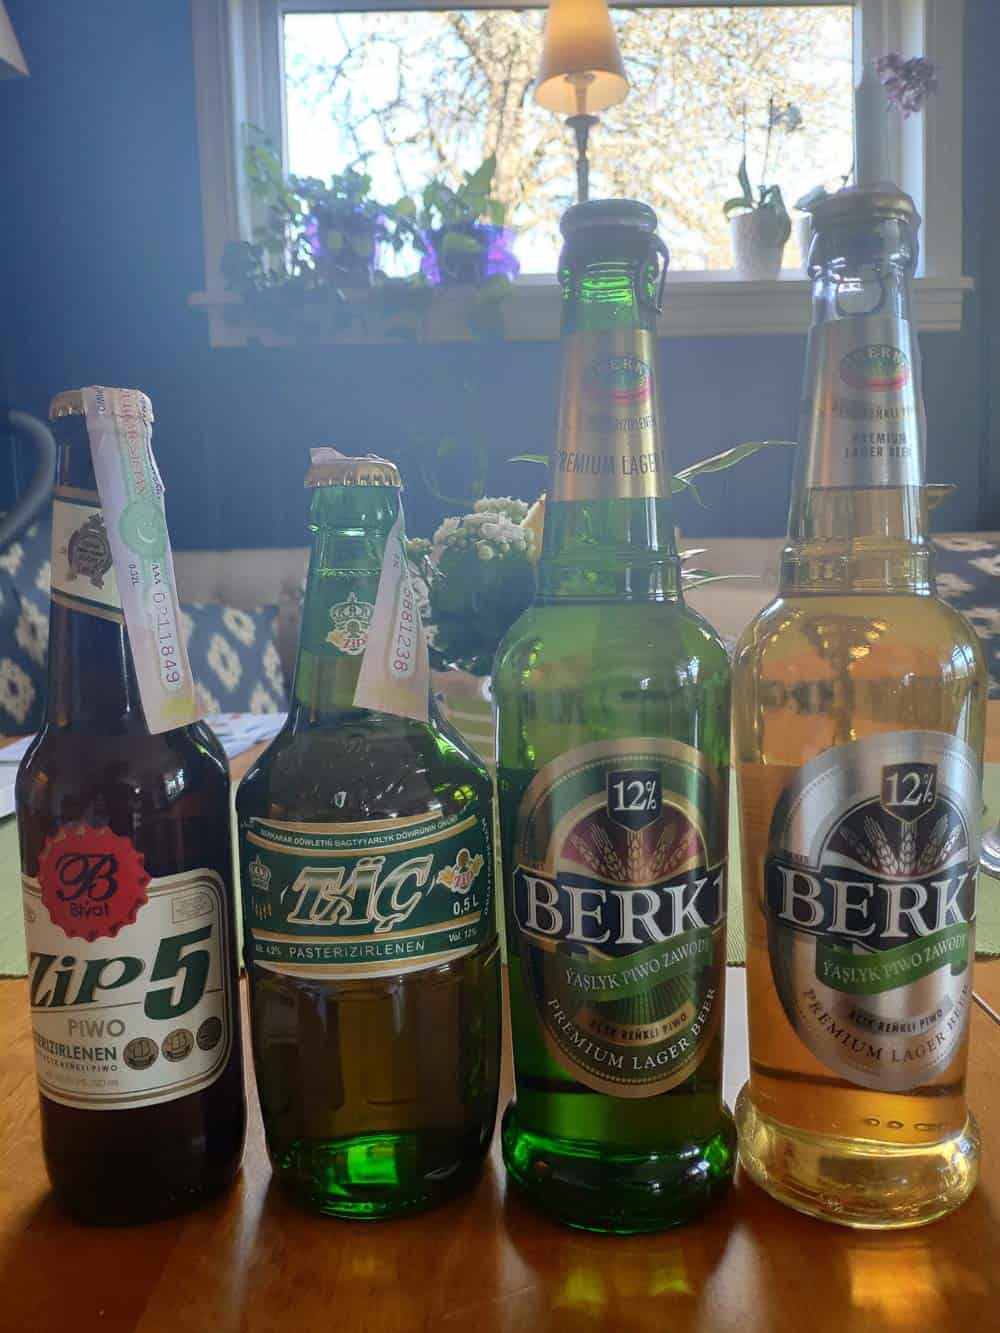 More Turkmenistan beer